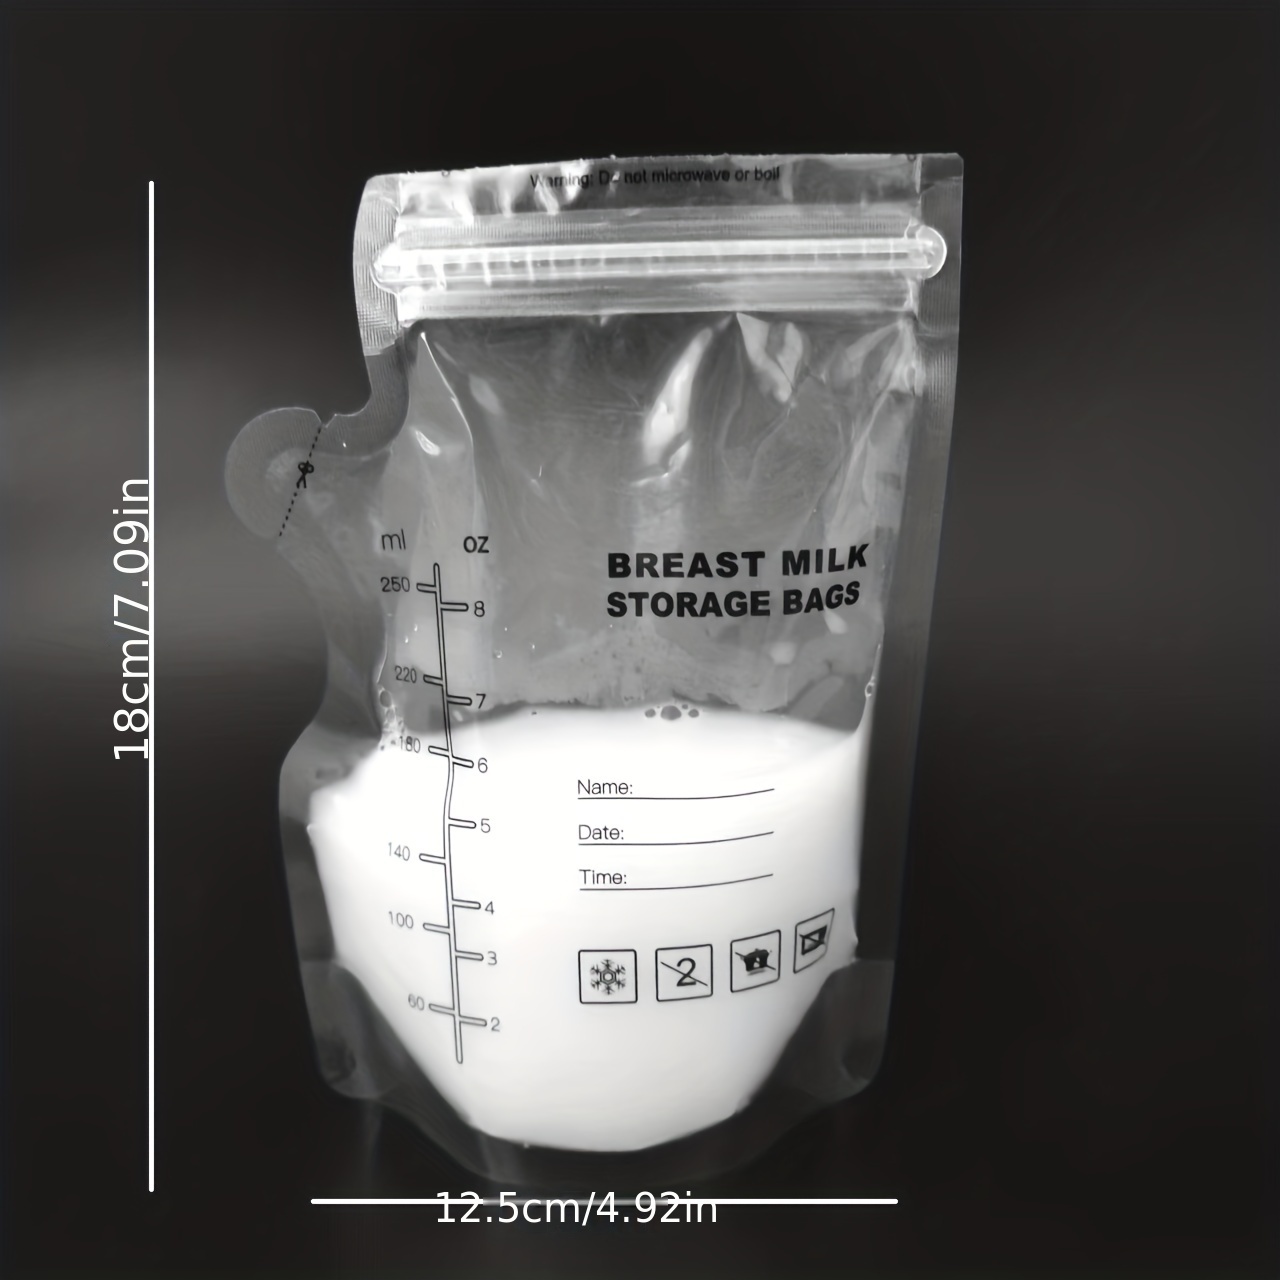 Breastmilk Storage Bags - 2 PK